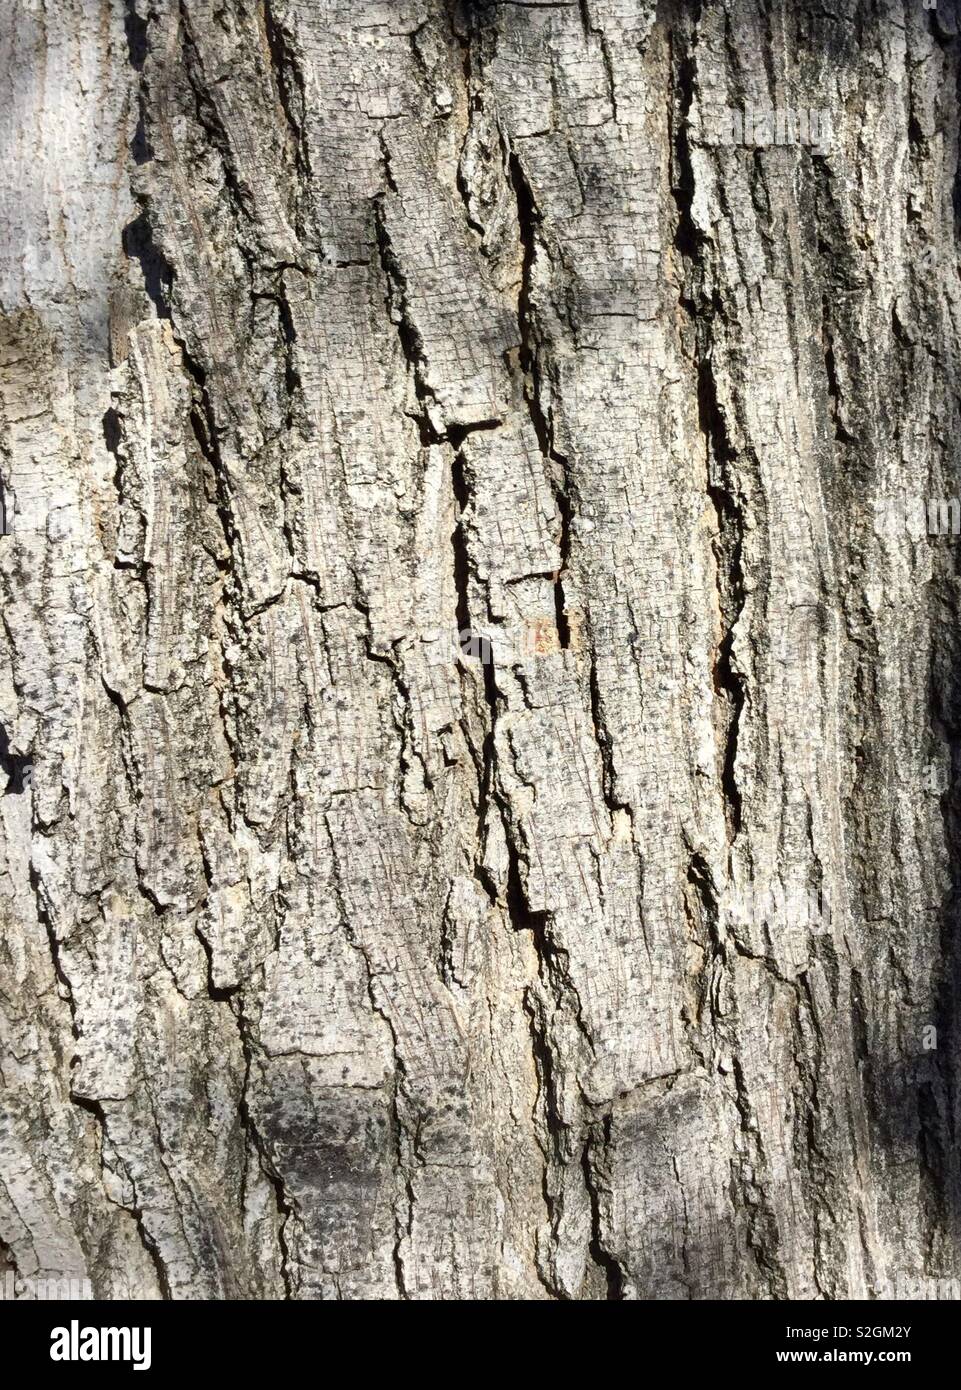 L'écorce des arbres, gris p, textures rugueuses. Libre Banque D'Images